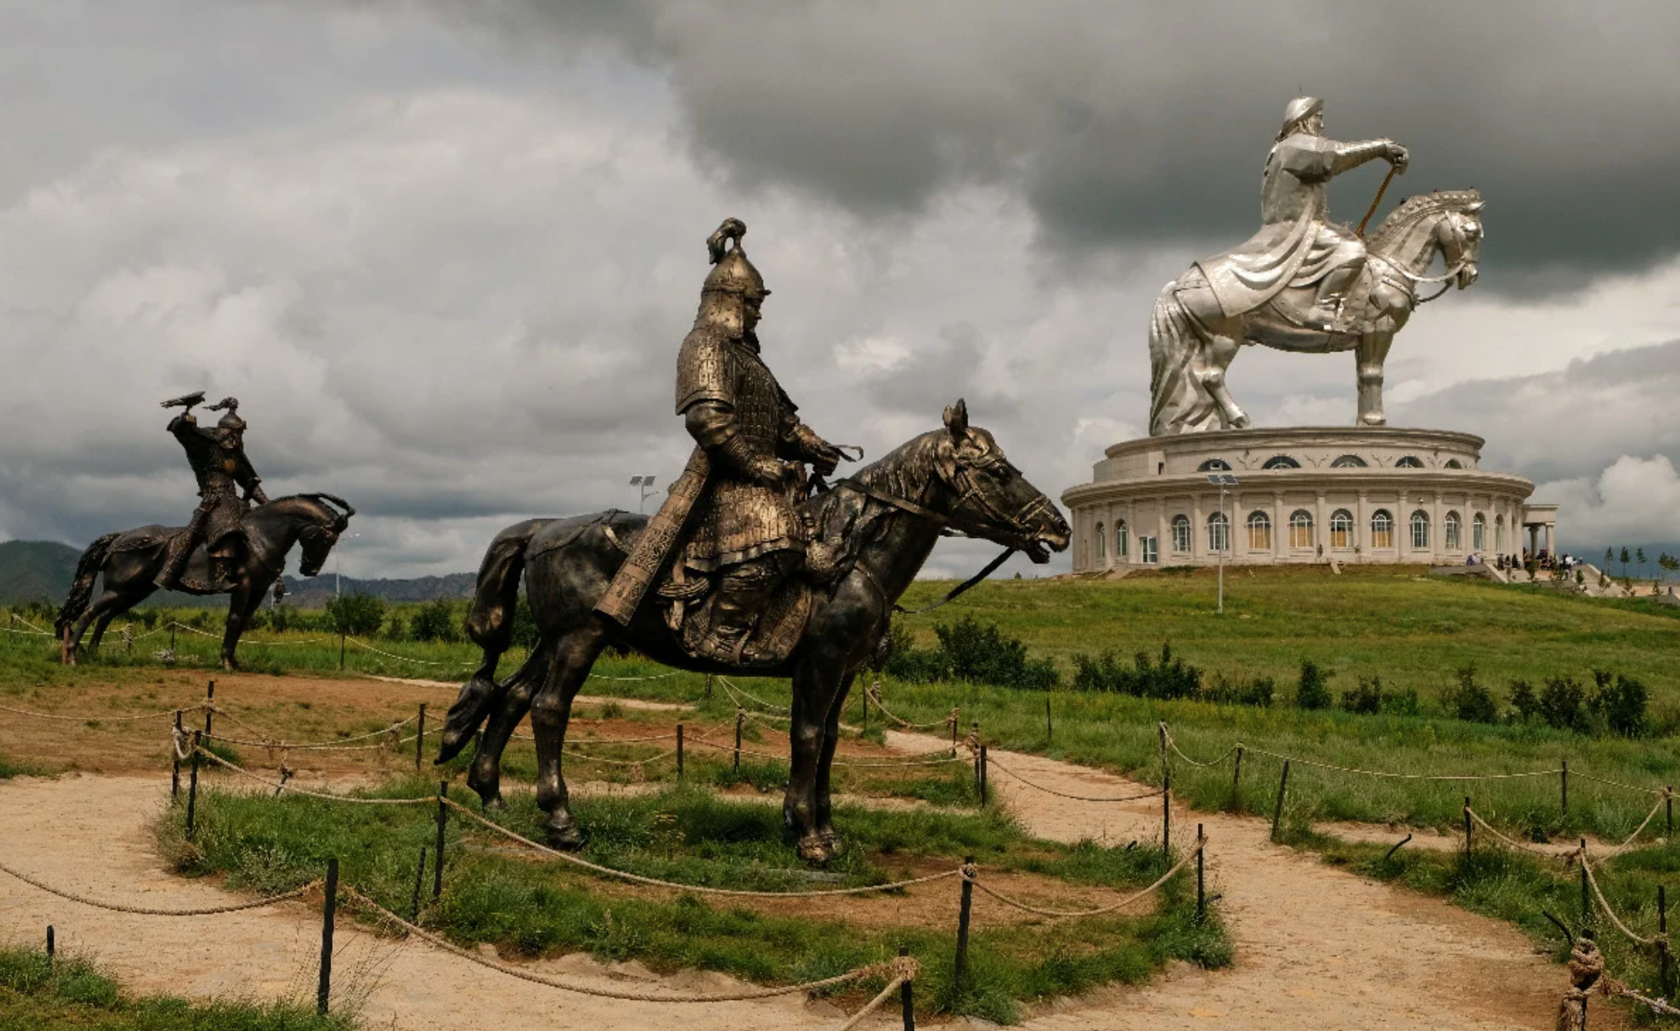 Улан хане. Памятник Чингисхану в Улан-Баторе. Статуя Чингисхана в Монголии. Конная статуя Чингисхана в Монголии. Памятник Чингисхану в Монголии в Улан Баторе.